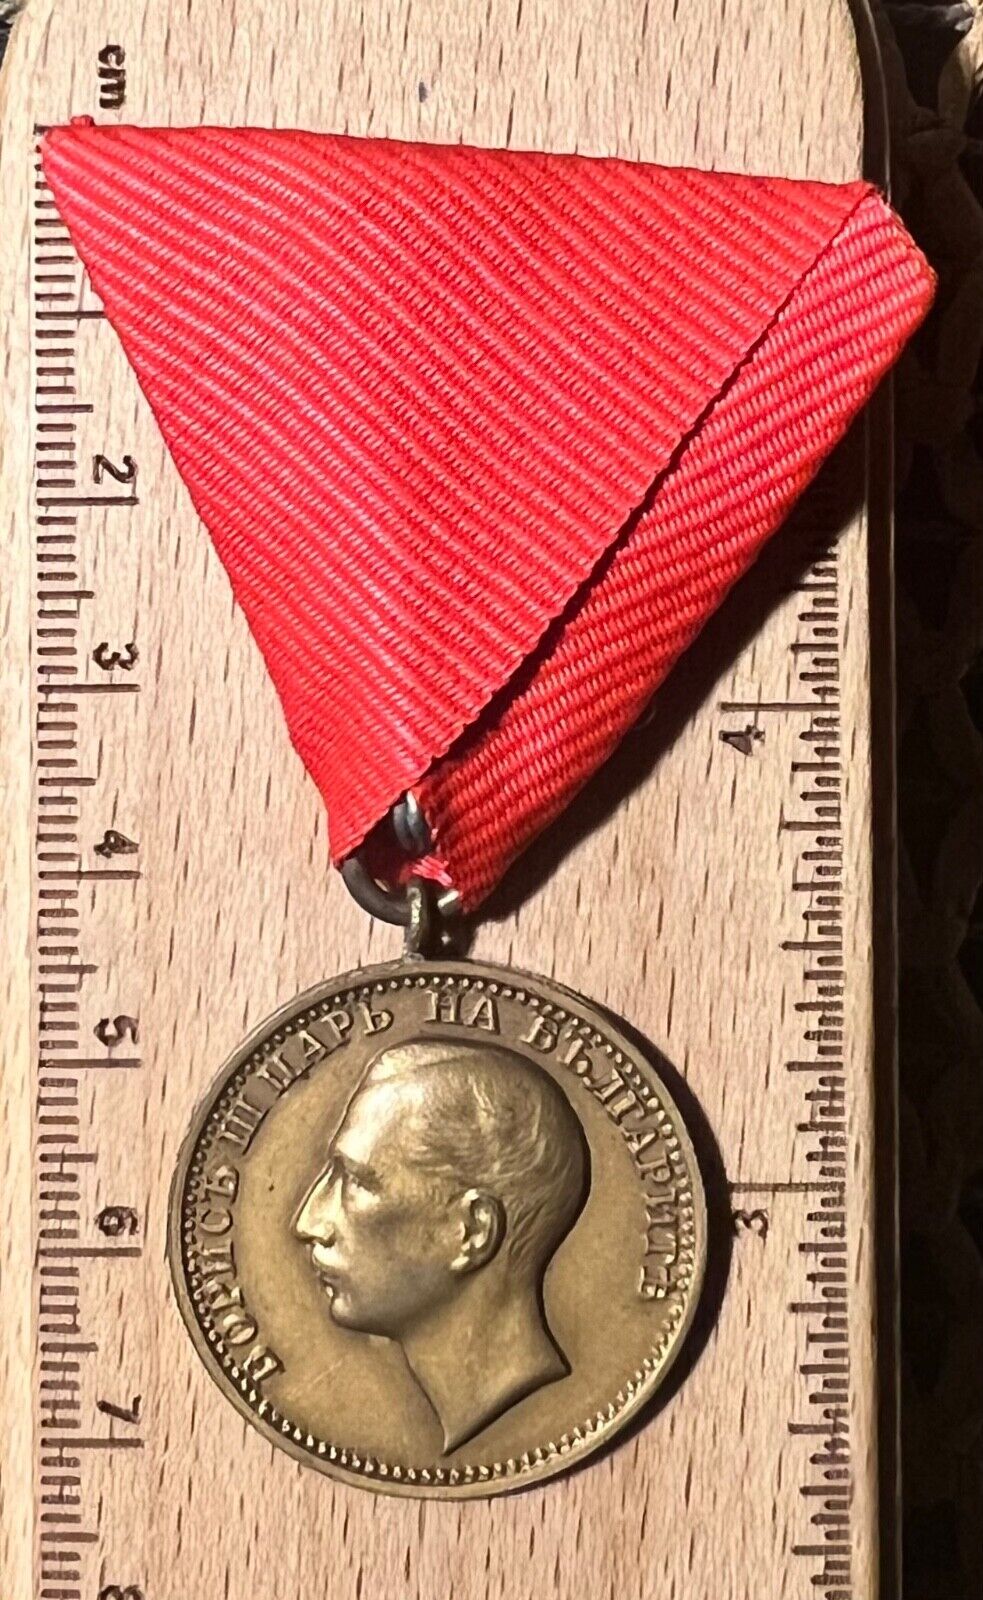 Bulgarian Medal of Merit Bulgaria medal